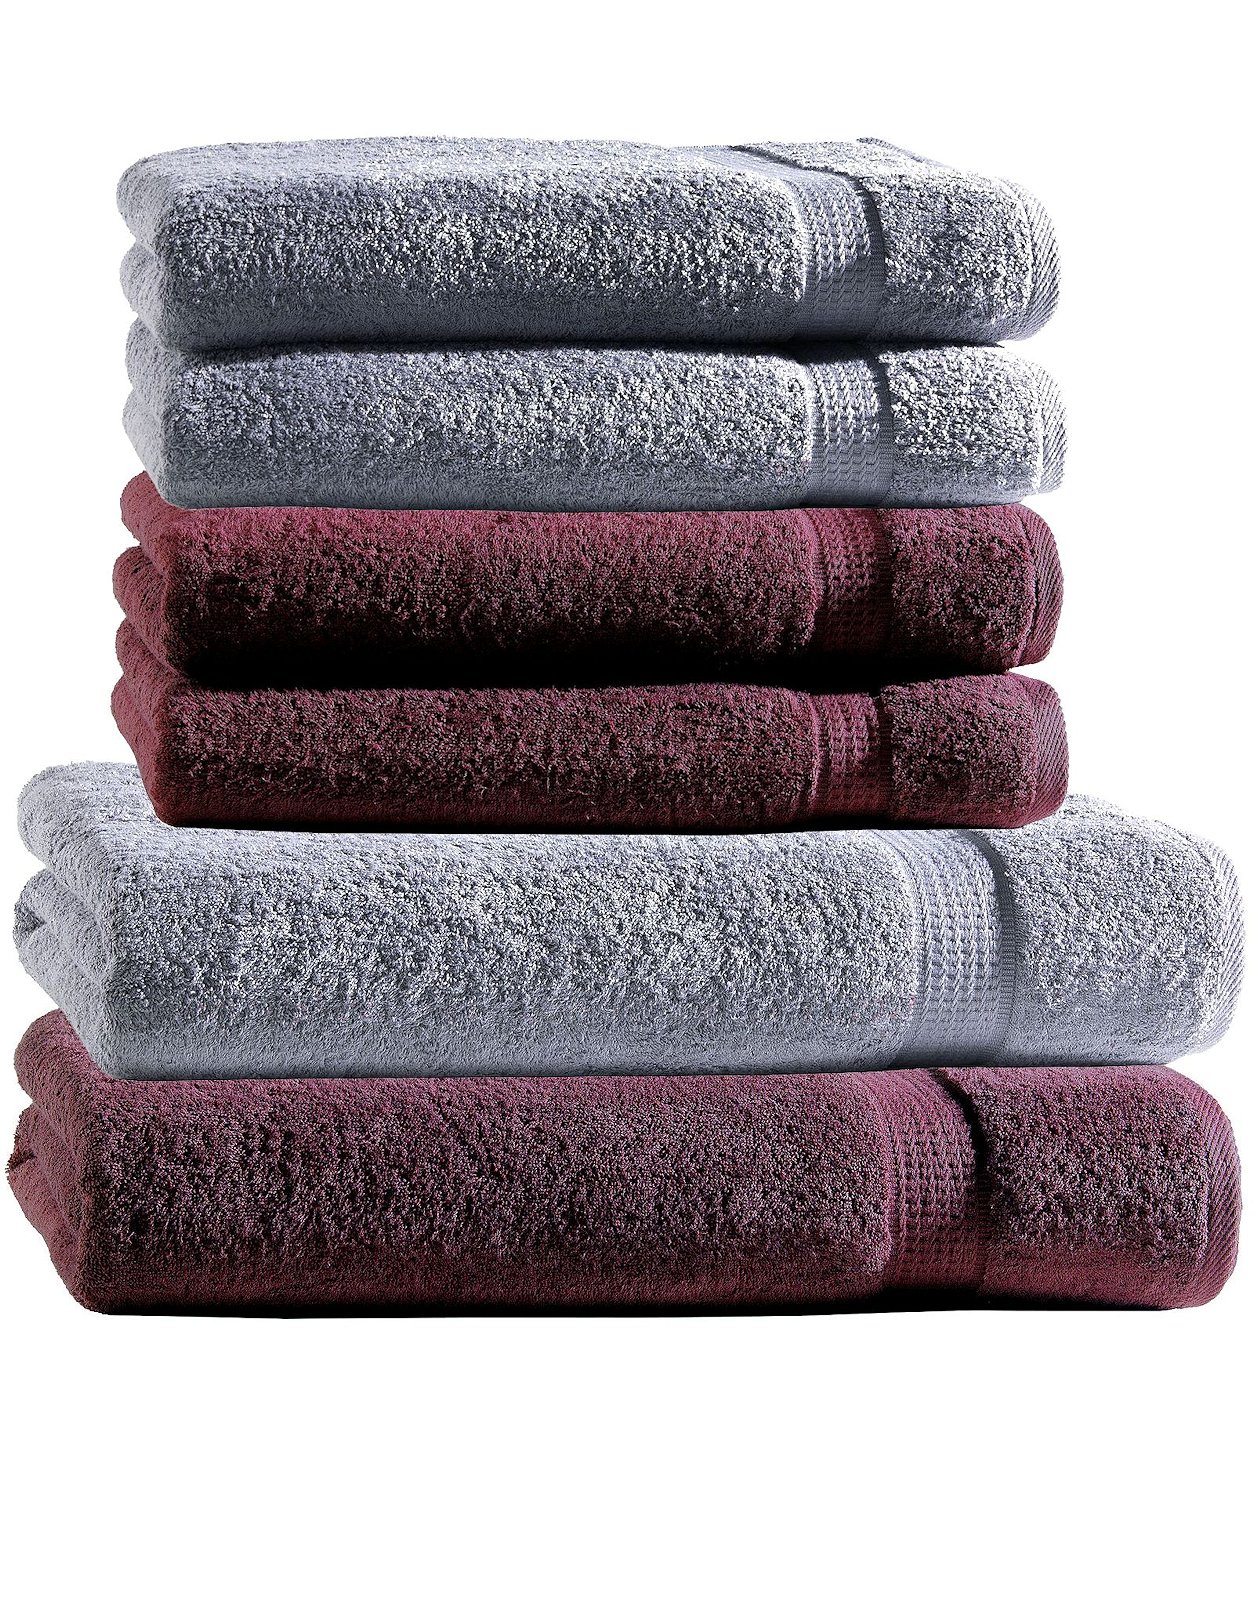 Handtuch Set 6tlg. 2 Mix Duschtuch 4 Handtücher 2 Baumwolle Farben Duschtücher eBay 